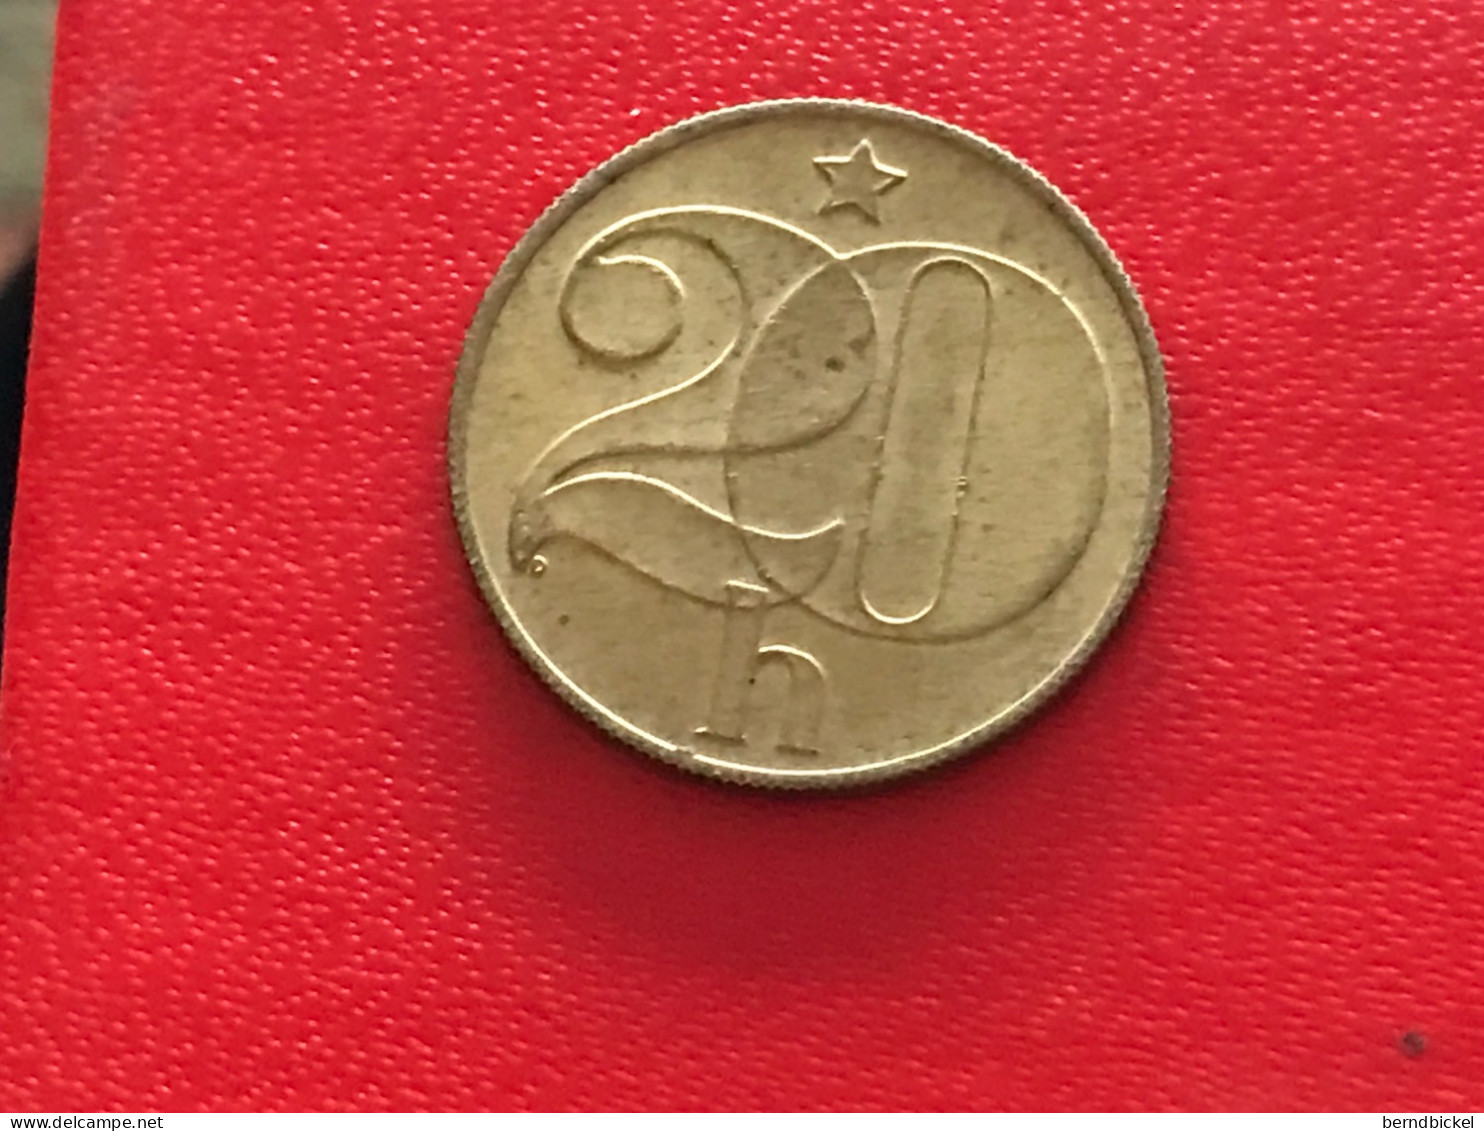 Münze Münzen Umlaufmünze Tschechoslowakei 20 Heller 1985 - Tschechoslowakei